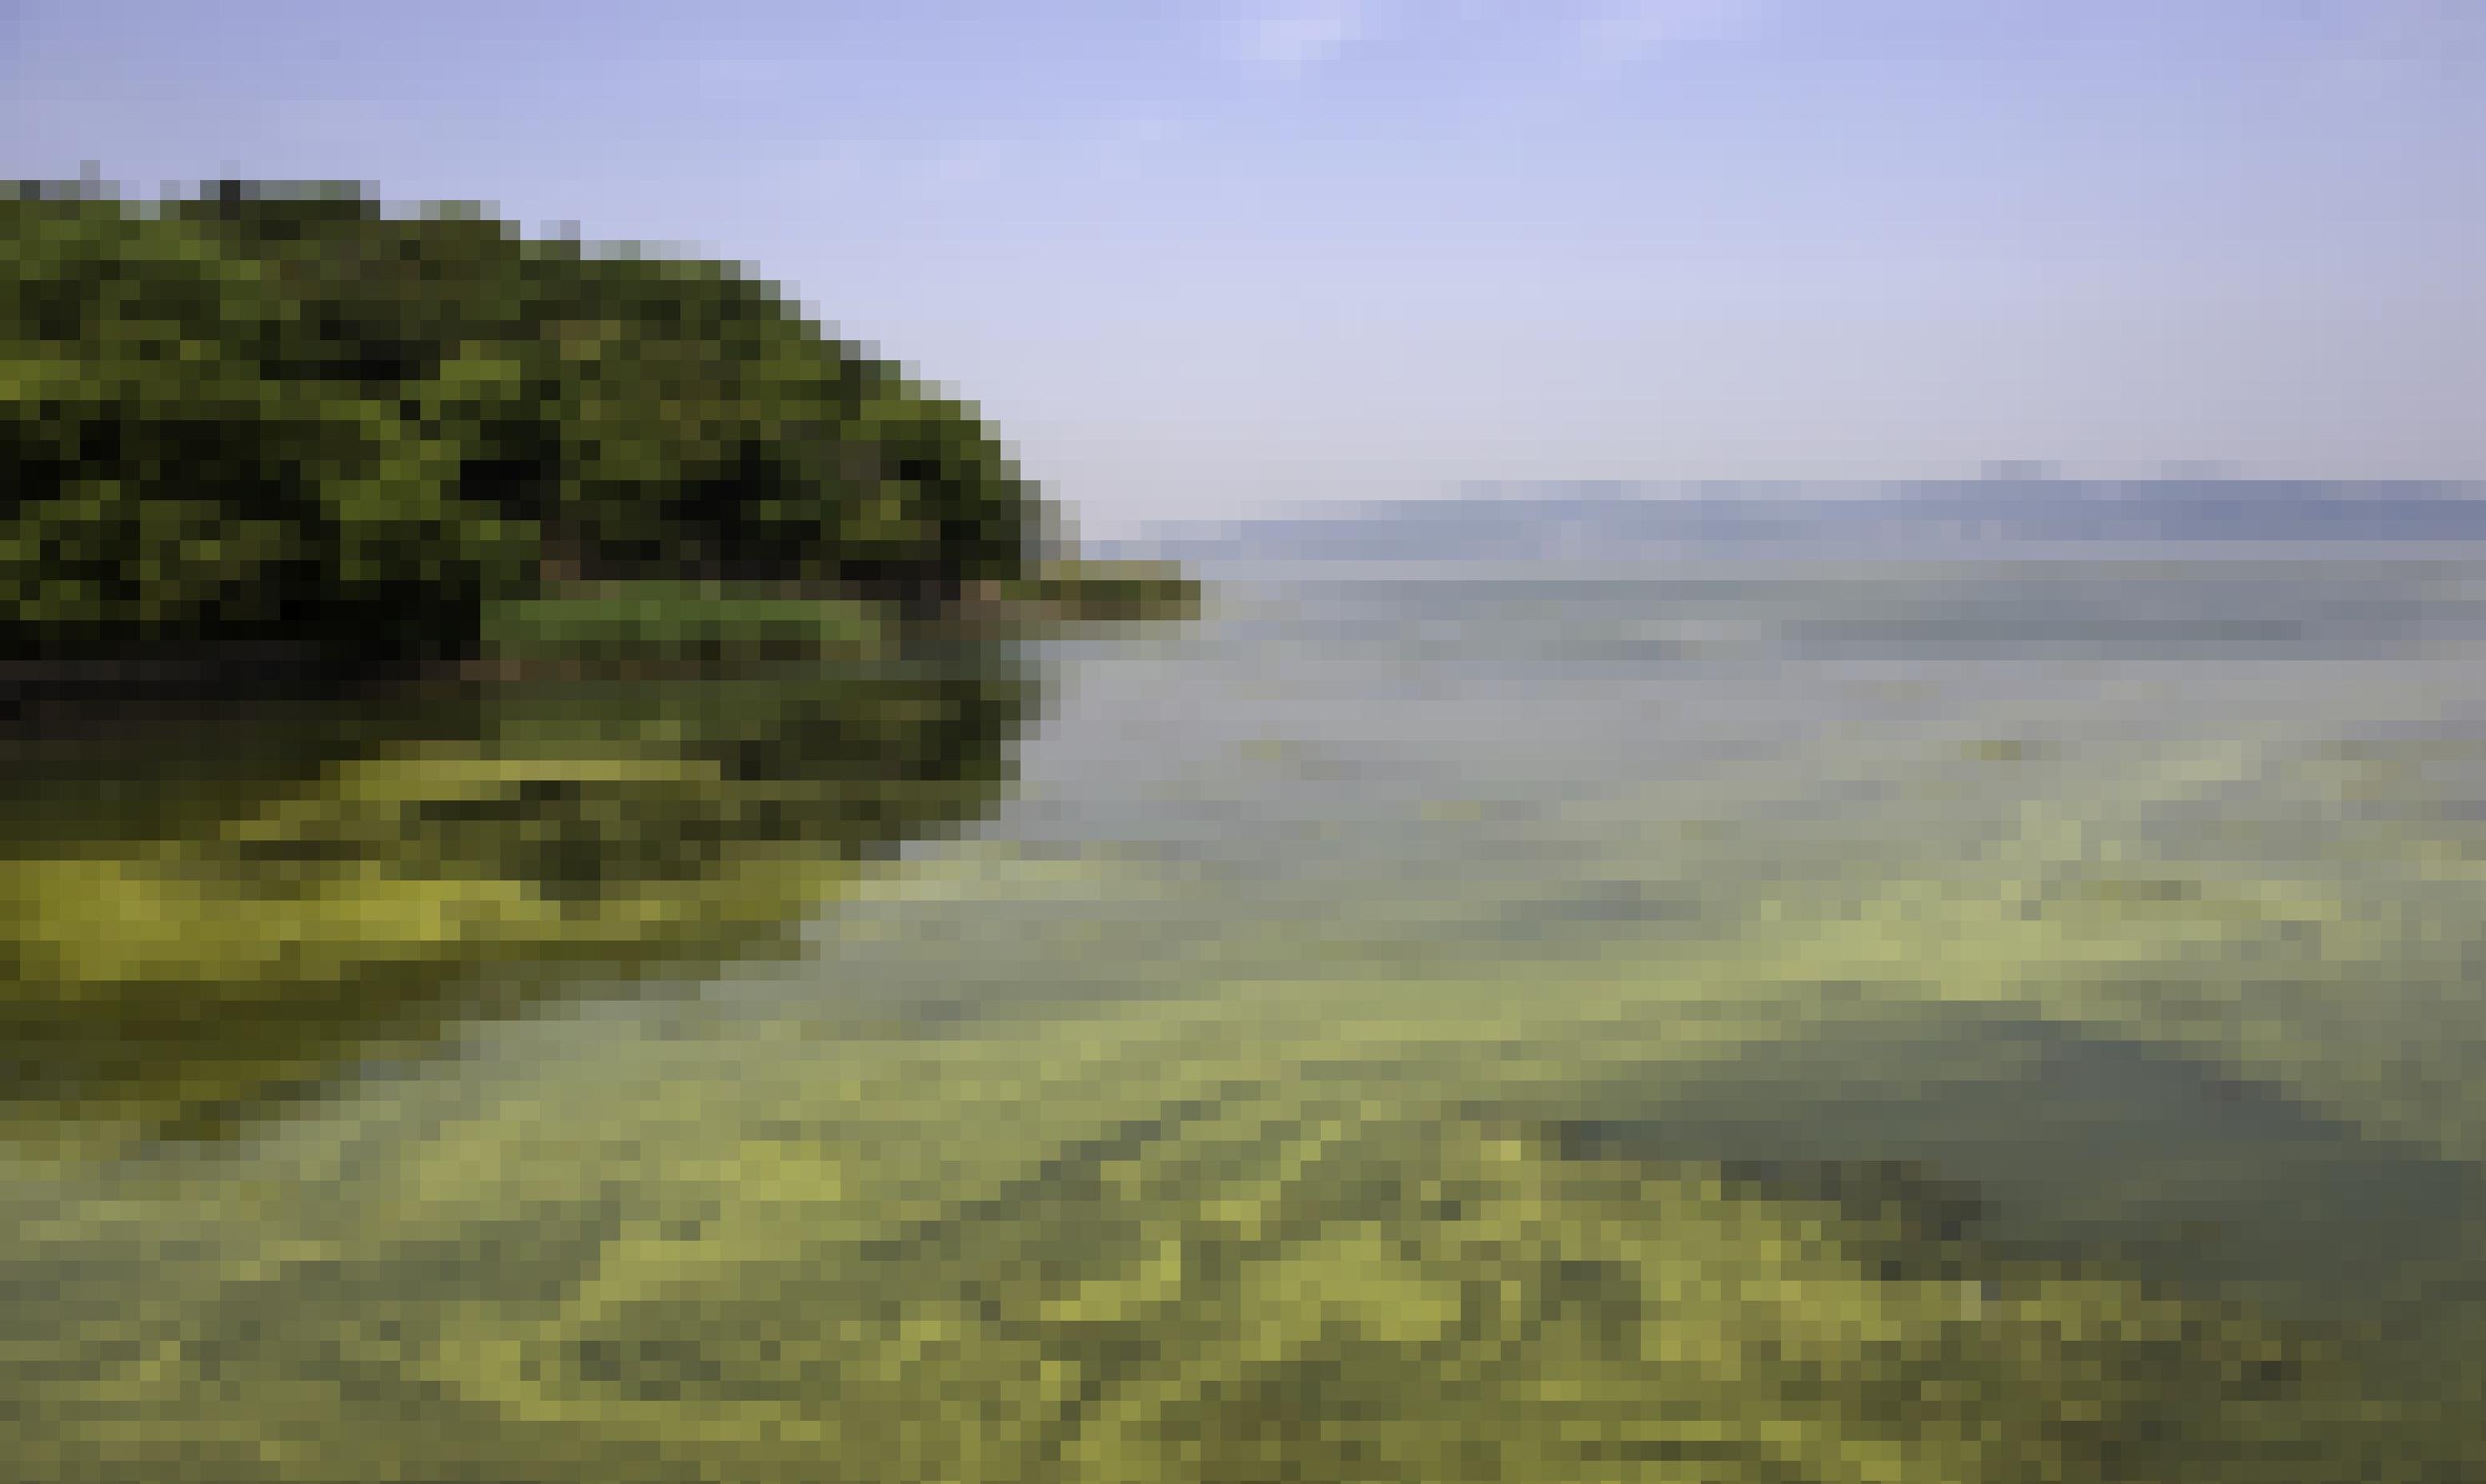 Aufnahme eines Sees mit Algenblüten. Ein grüner Film treibt auf der Wasseroberfläche.